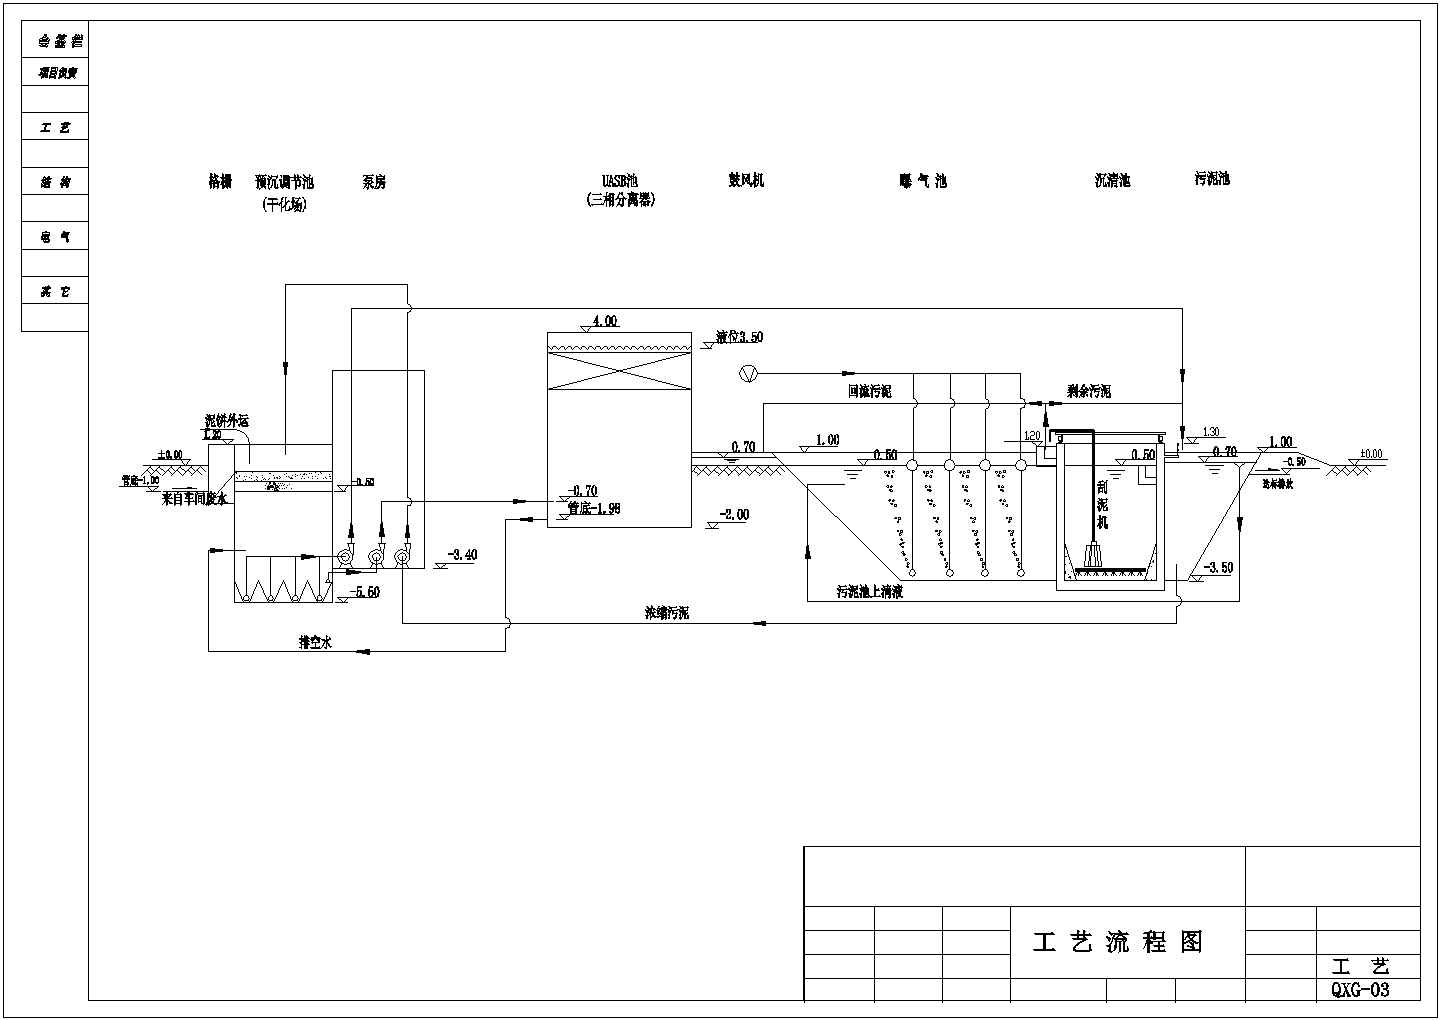 某公司自主设计淀粉废水处理工艺流程图